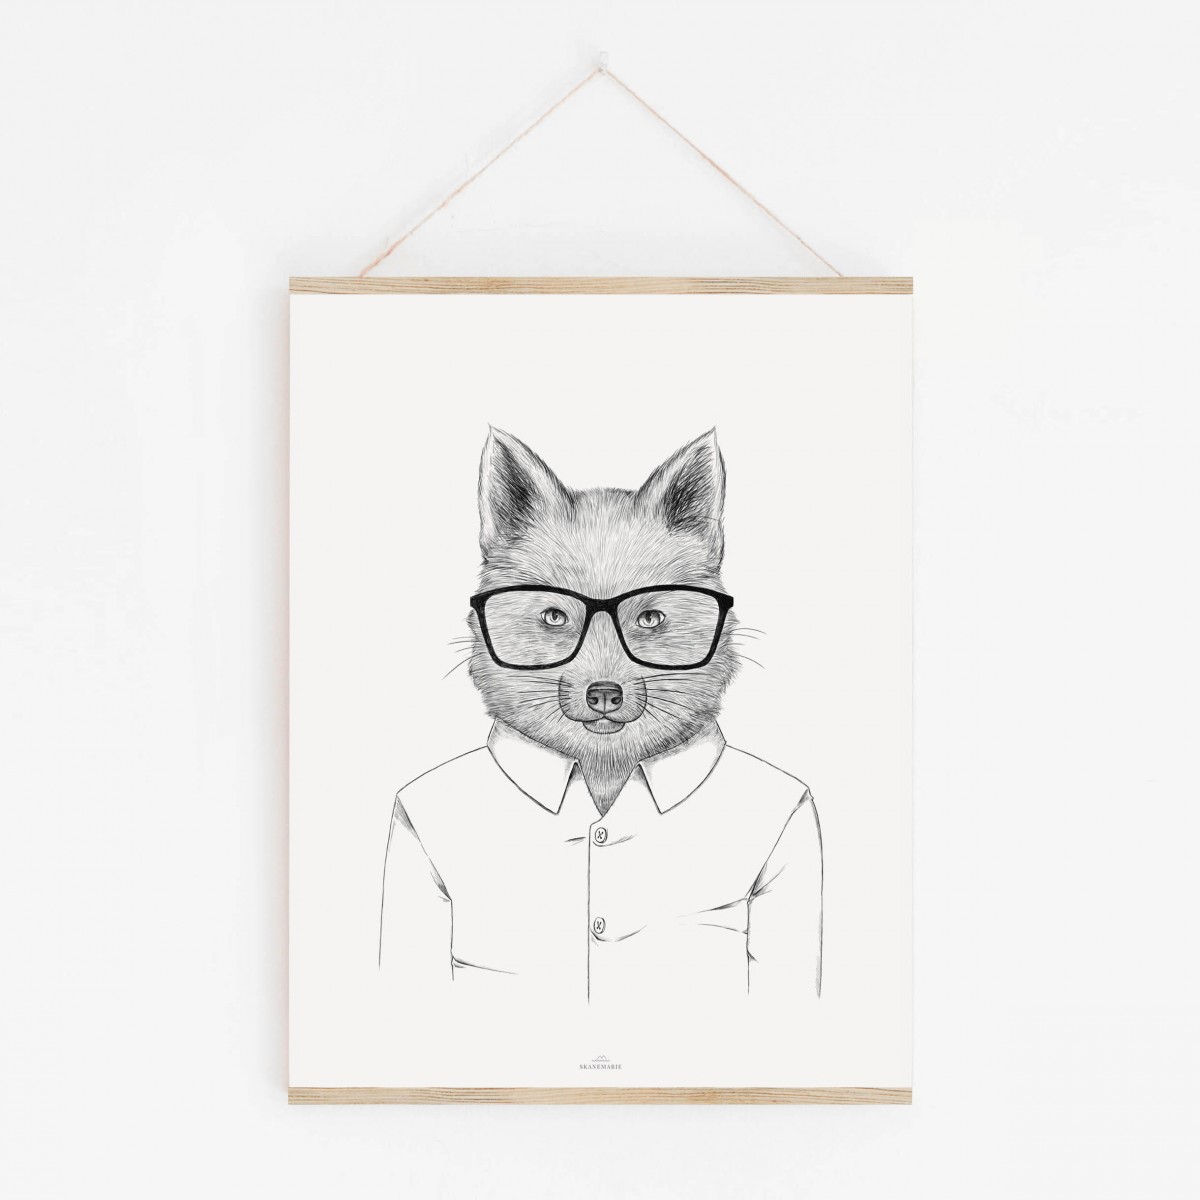 Fuchs im Hemd als hochwertiger Print im minimalistischen Stil von Skanemarie +++ Poster, Wandbild